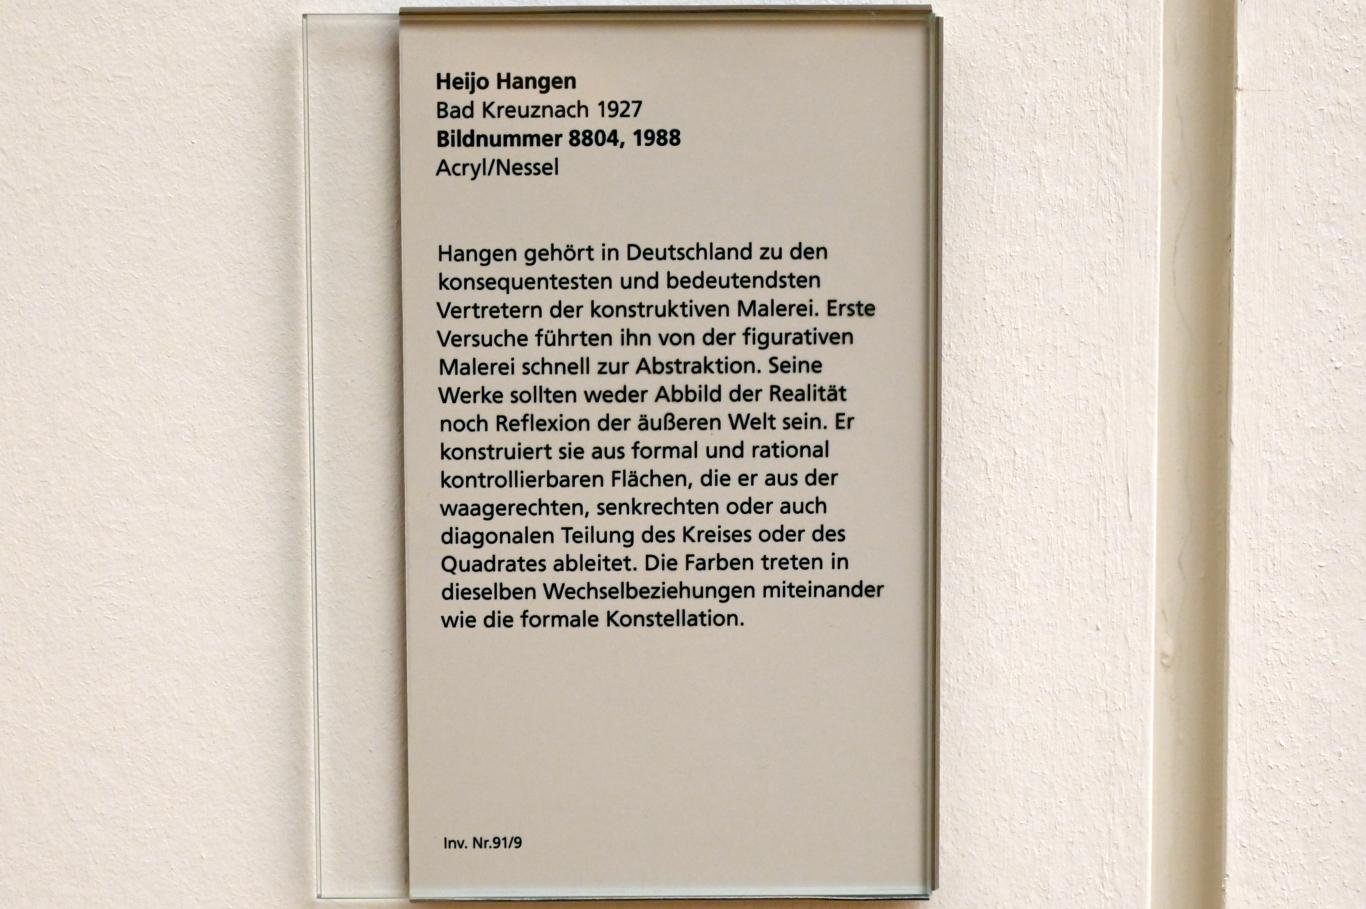 Heijo Hangen (1988), Bildnummer 8804, Mainz, Landesmuseum, Moderne, Saal 4, 1988, Bild 2/2